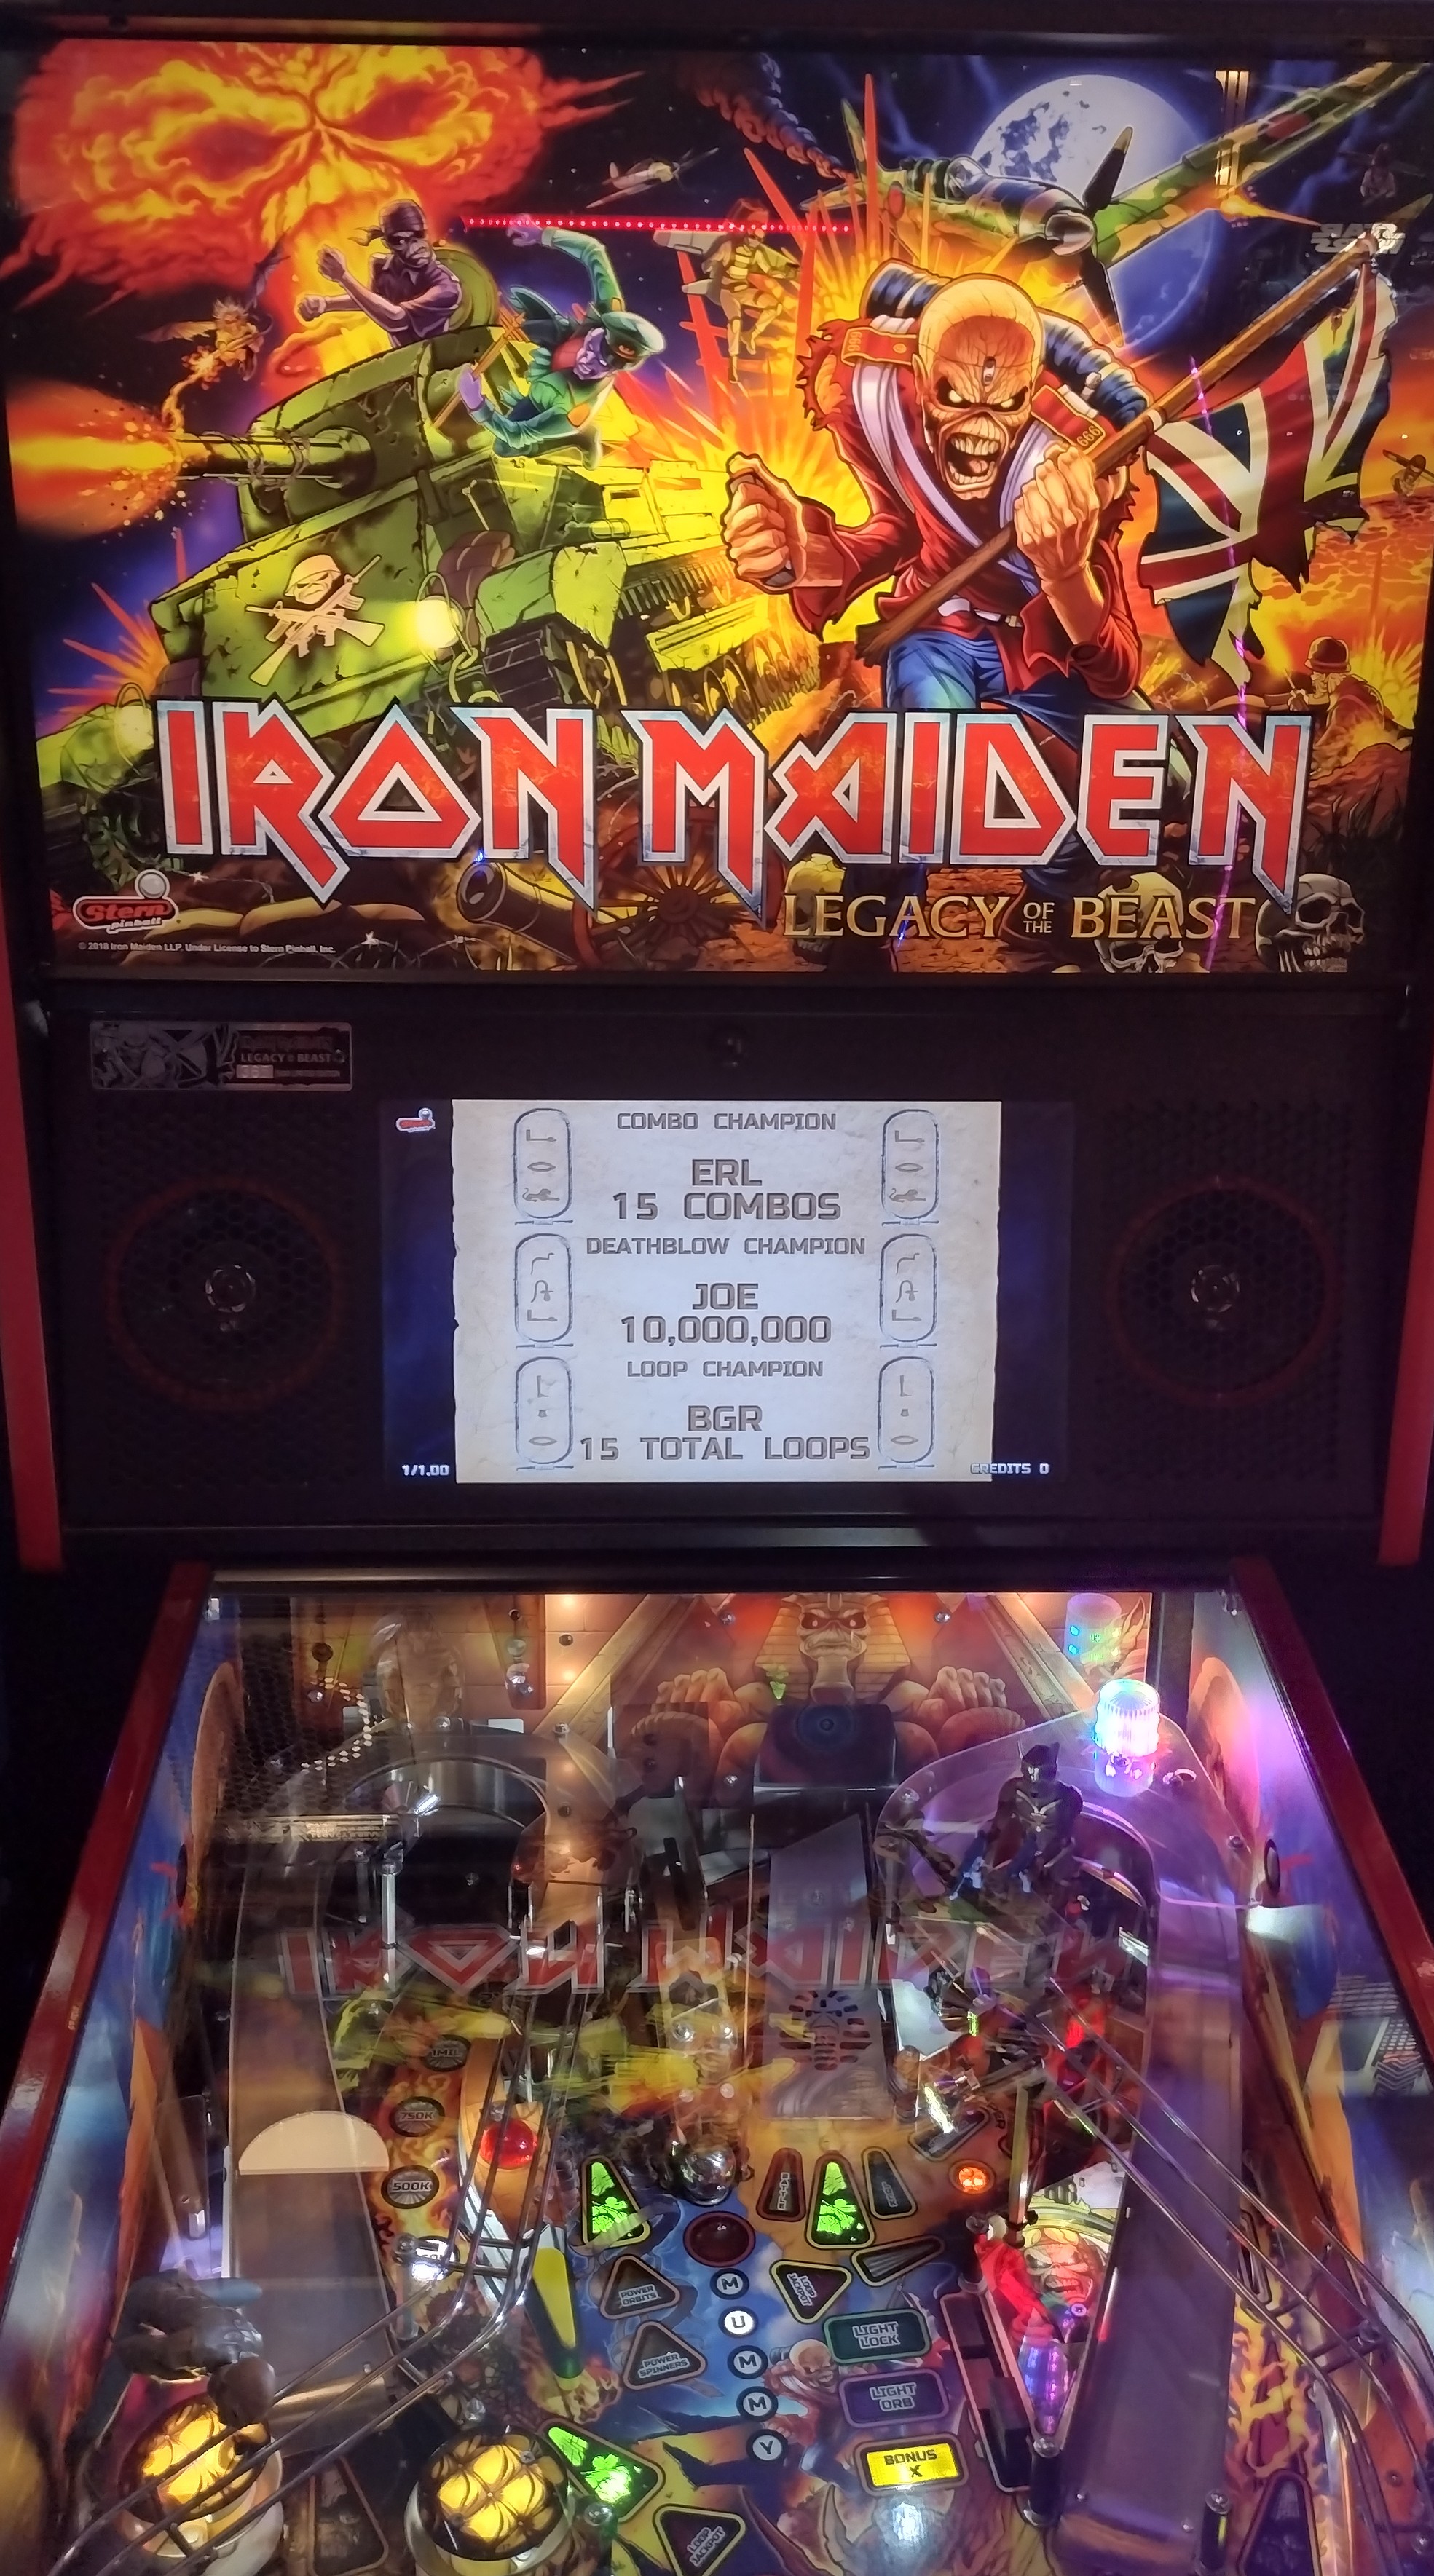 Hauntedprogram: Iron Maiden (Pinball: 3 Balls) 45,371,260 points on 2023-10-01 01:26:00